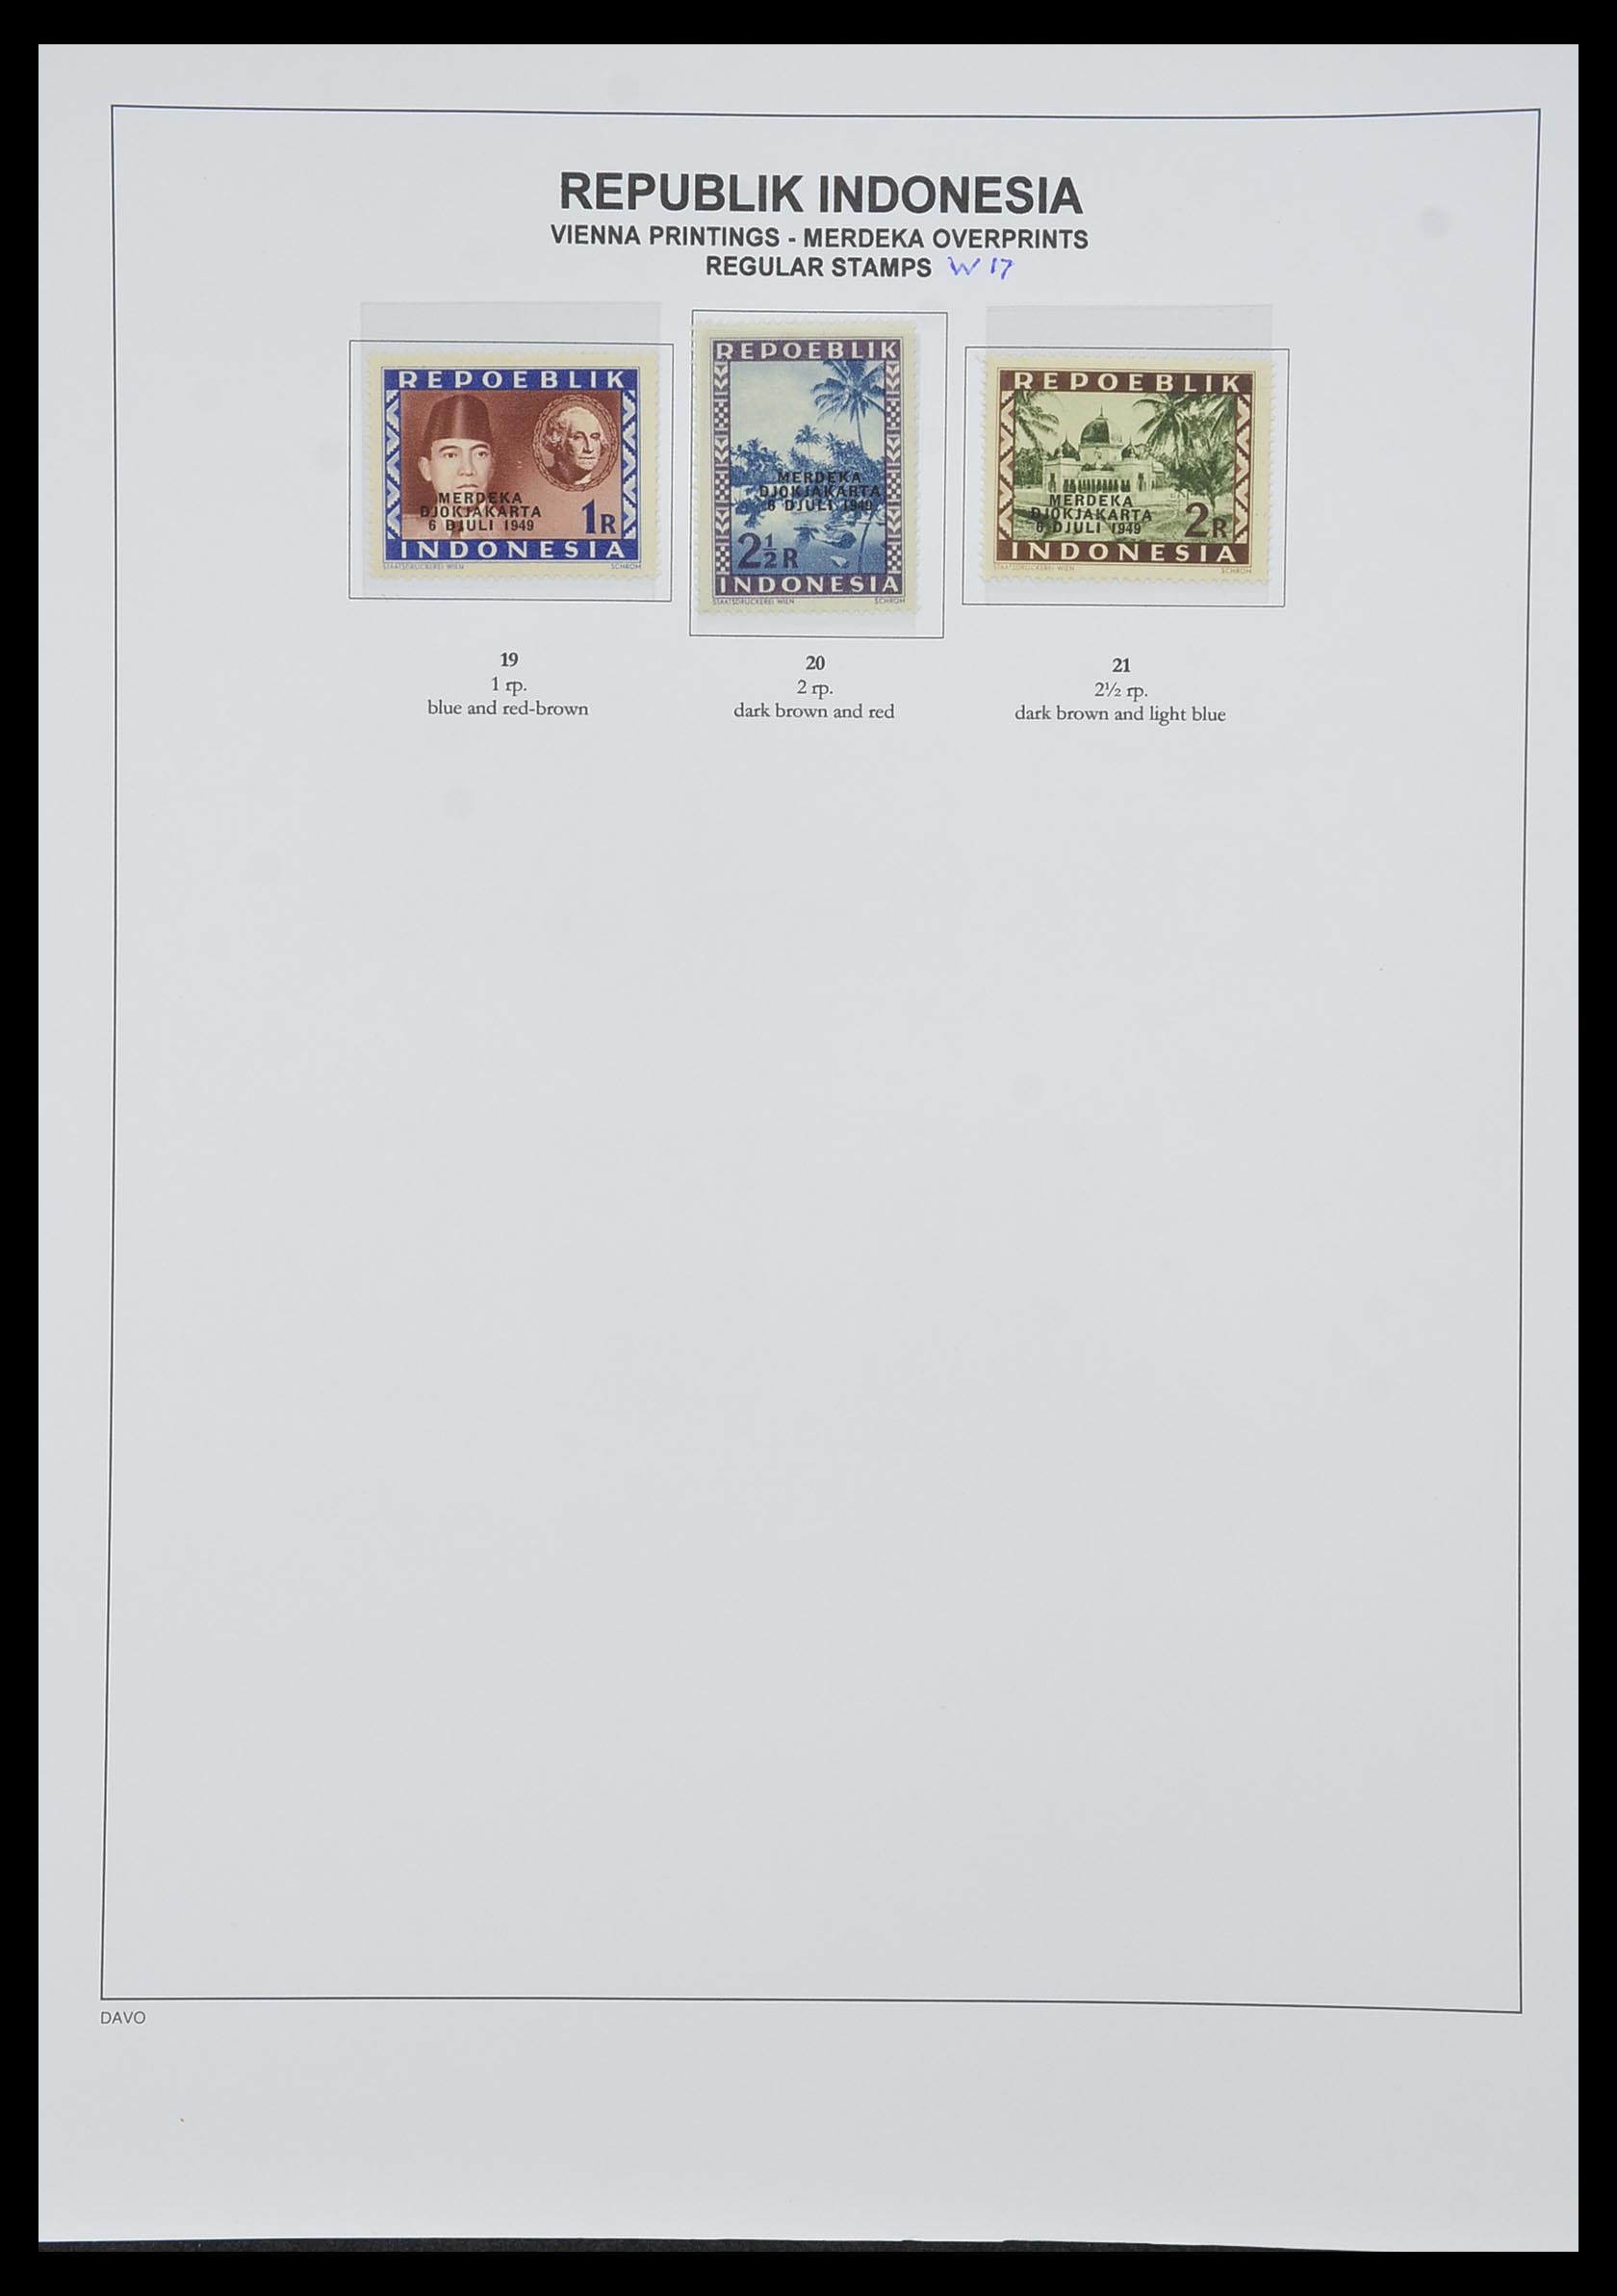 33988 033 - Postzegelverzameling 33988 Weense drukken Indonesië.